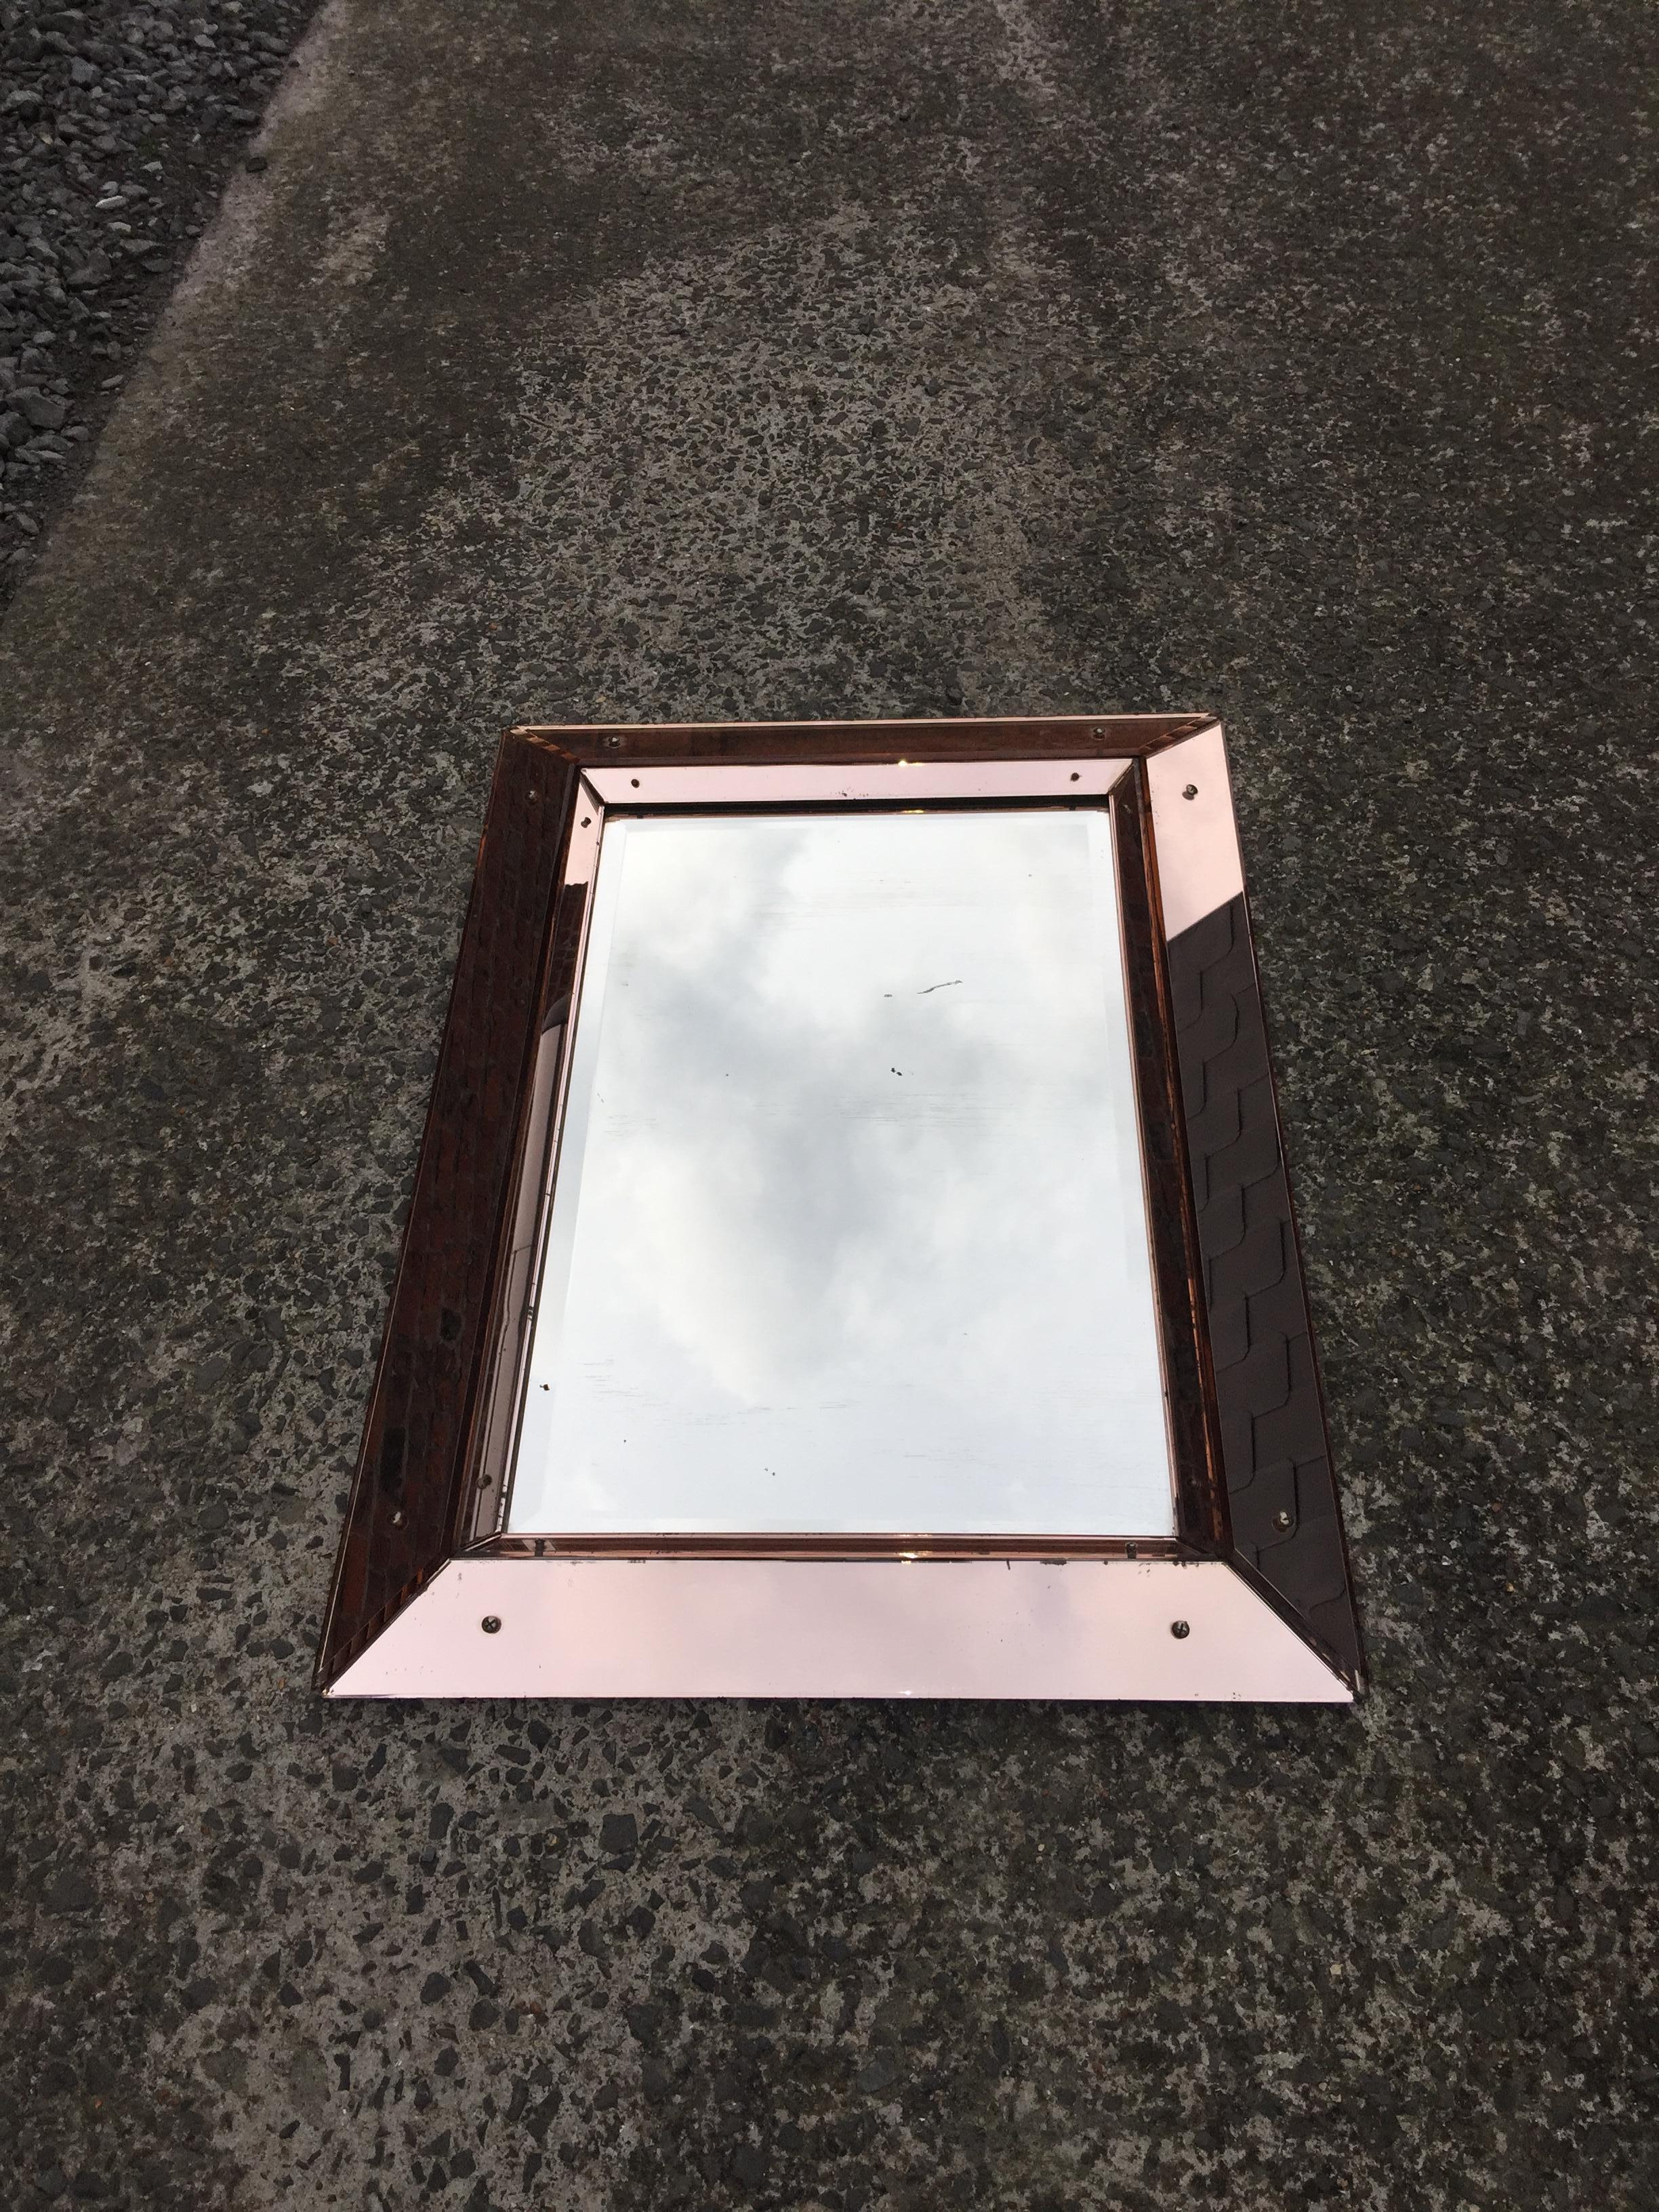 Jacques Adnet (attribué à) Miroir Art déco en verre rose et miroir, vers 1940
bon état général, petite usure mais pas de fissures, pas de cassure
les photos étant prises à l'extérieur il y a malheureusement des reflets (nuages, briques)